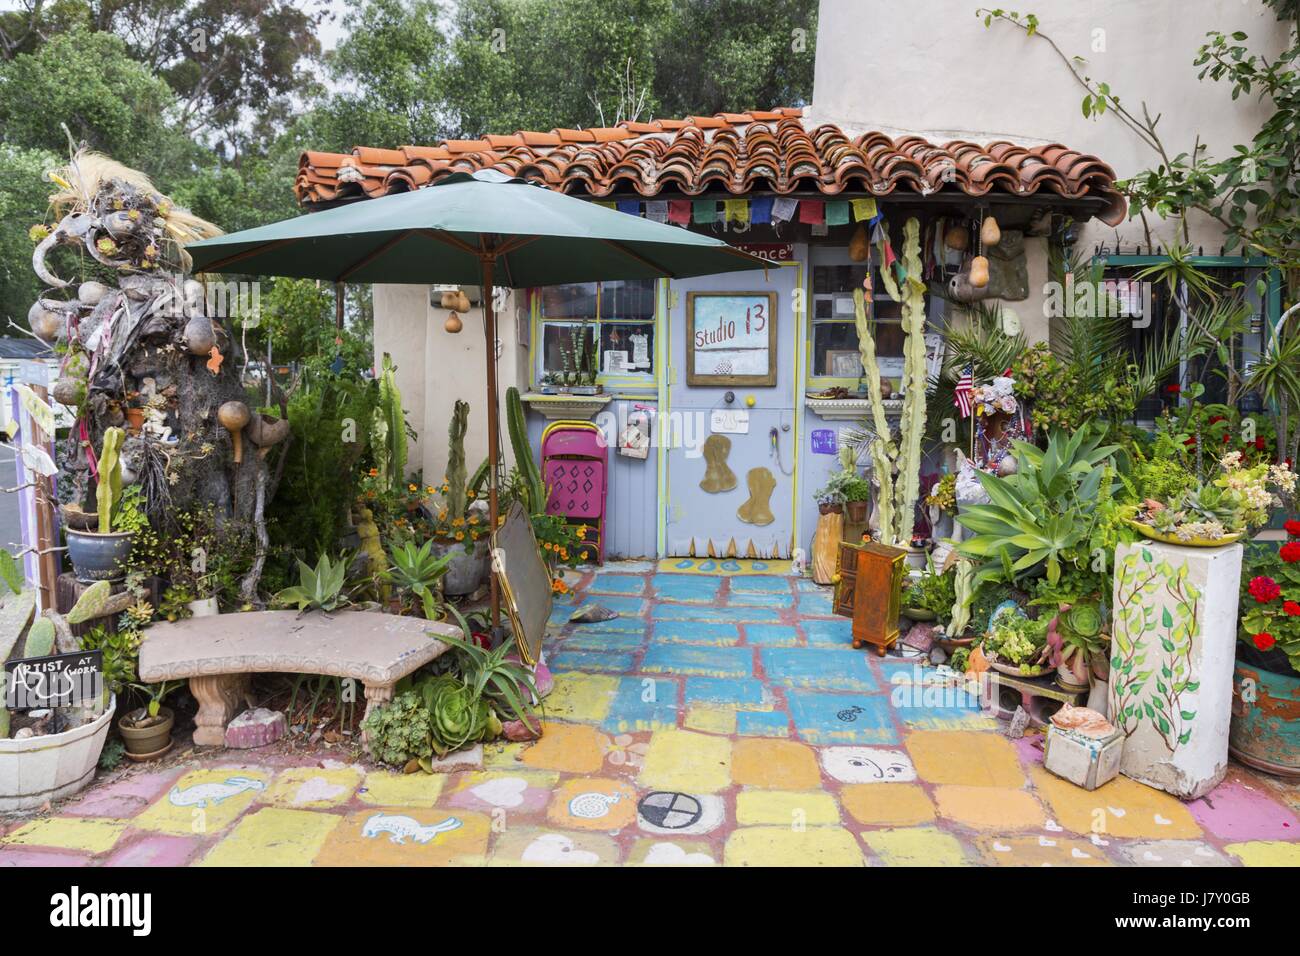 Spanish Village Art Studio dans la région de Balboa Park, San Diego, Californie Banque D'Images